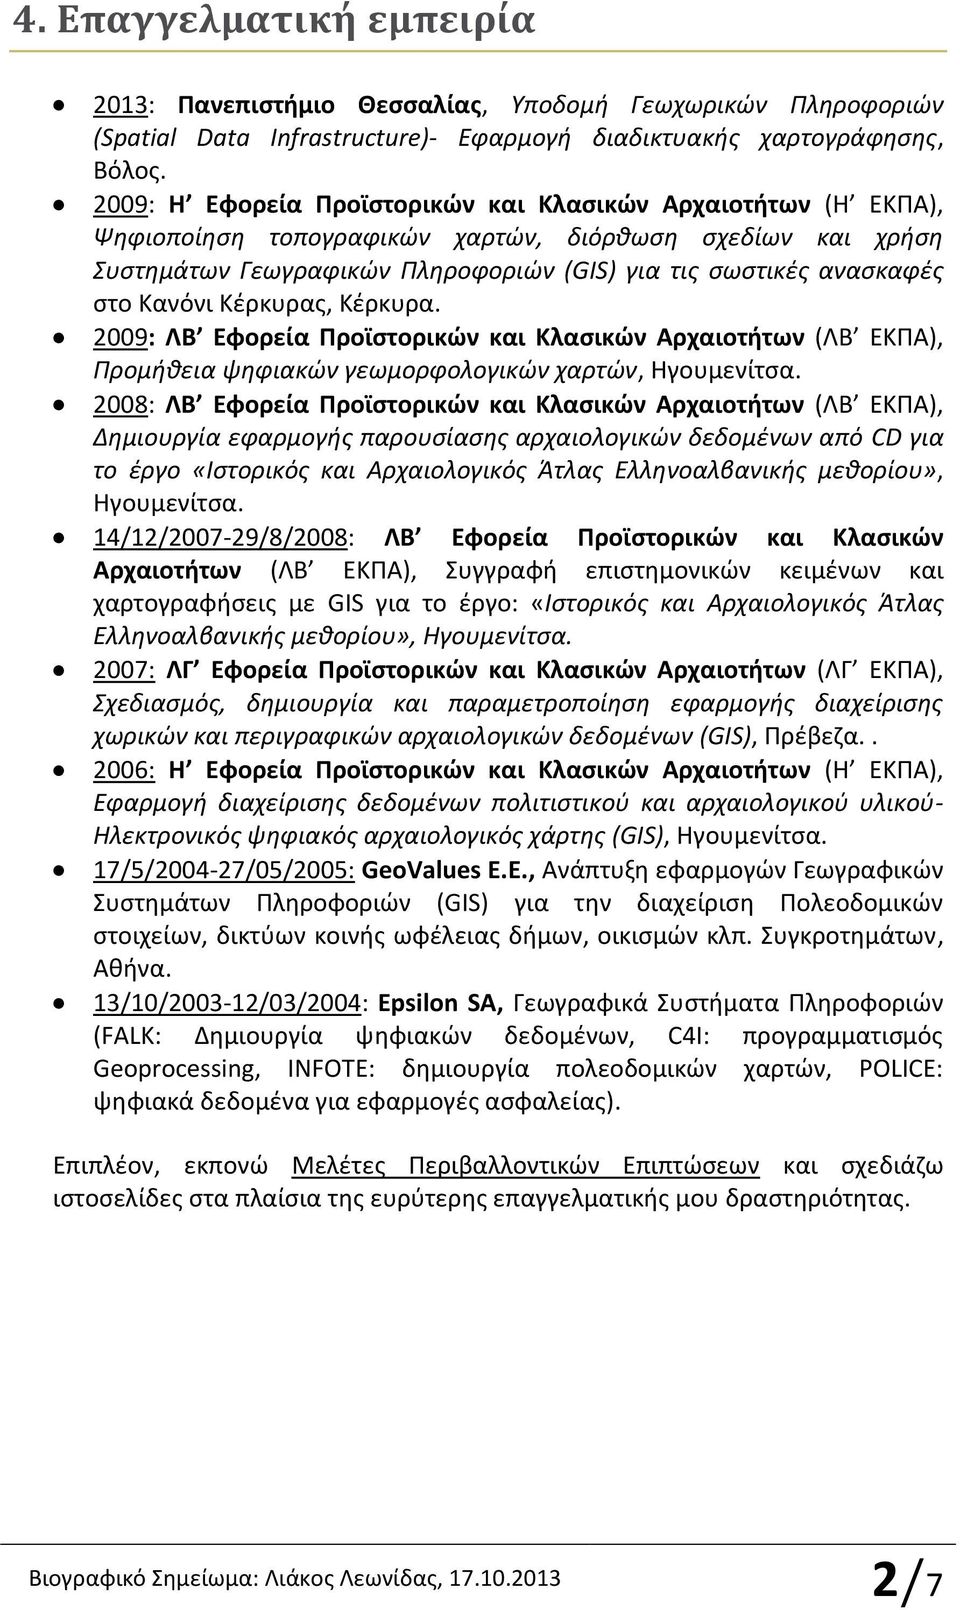 Κανόνι Κέρκυρας, Κέρκυρα. 2009: ΛΒ Εφορεία Προϊστορικών και Κλασικών Αρχαιοτήτων (ΛΒ ΕΚΠΑ), Προμήθεια ψηφιακών γεωμορφολογικών χαρτών, Ηγουμενίτσα.